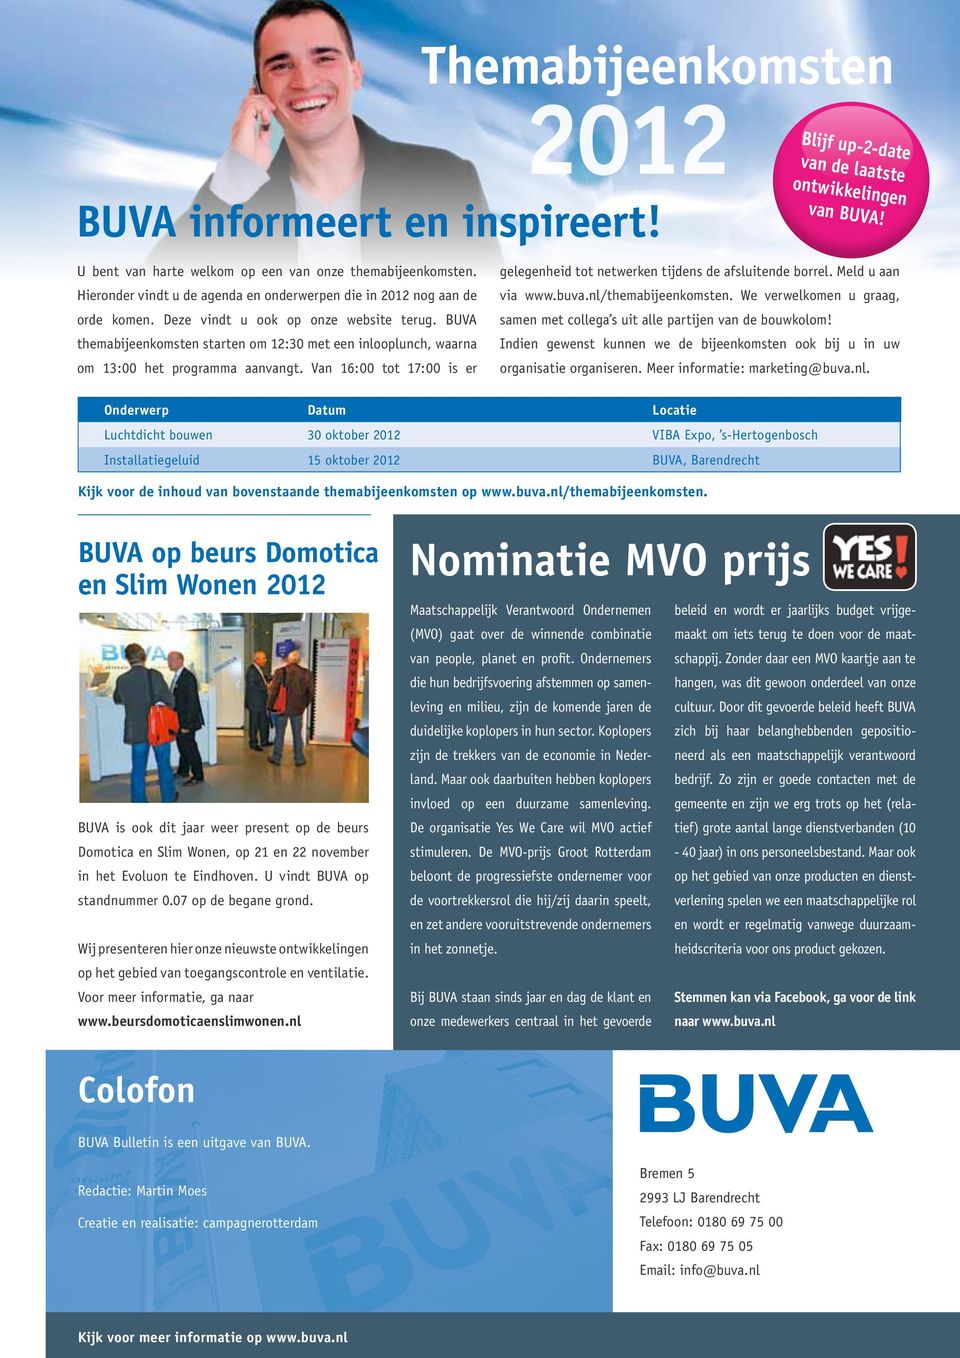 Van 16:00 tot 17:00 is er Blijf up-2-date van de laatste ontwikkelingen van BUVA! gelegenheid tot netwerken tijdens de afsluitende borrel. Meld u aan via www.buva.nl/themabijeenkomsten.